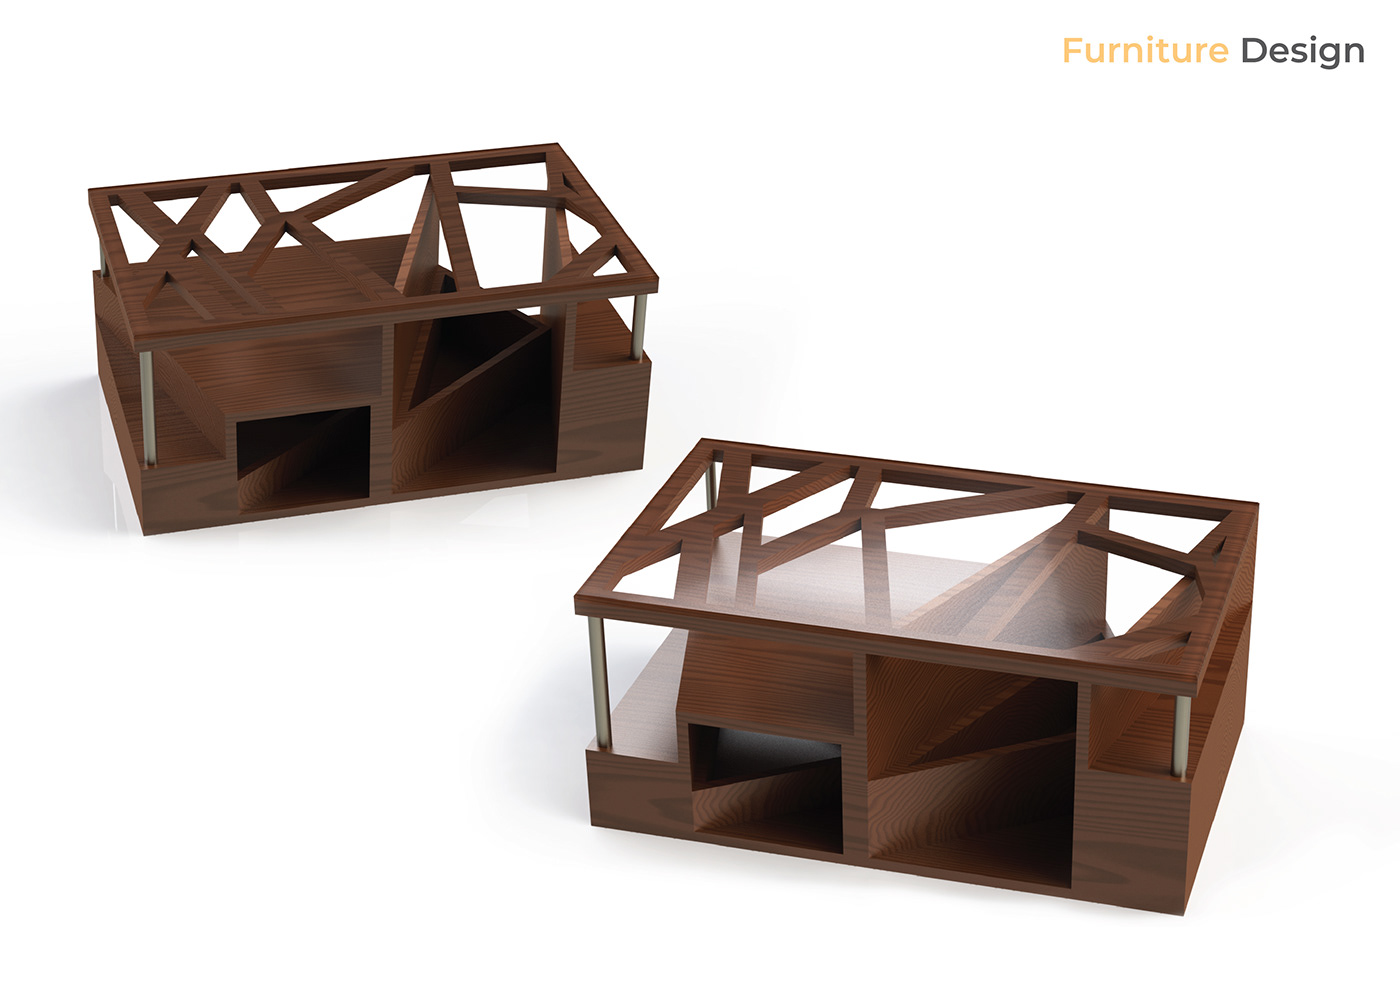 Portfolio Design product design  furniture design  Photography  industrial design 